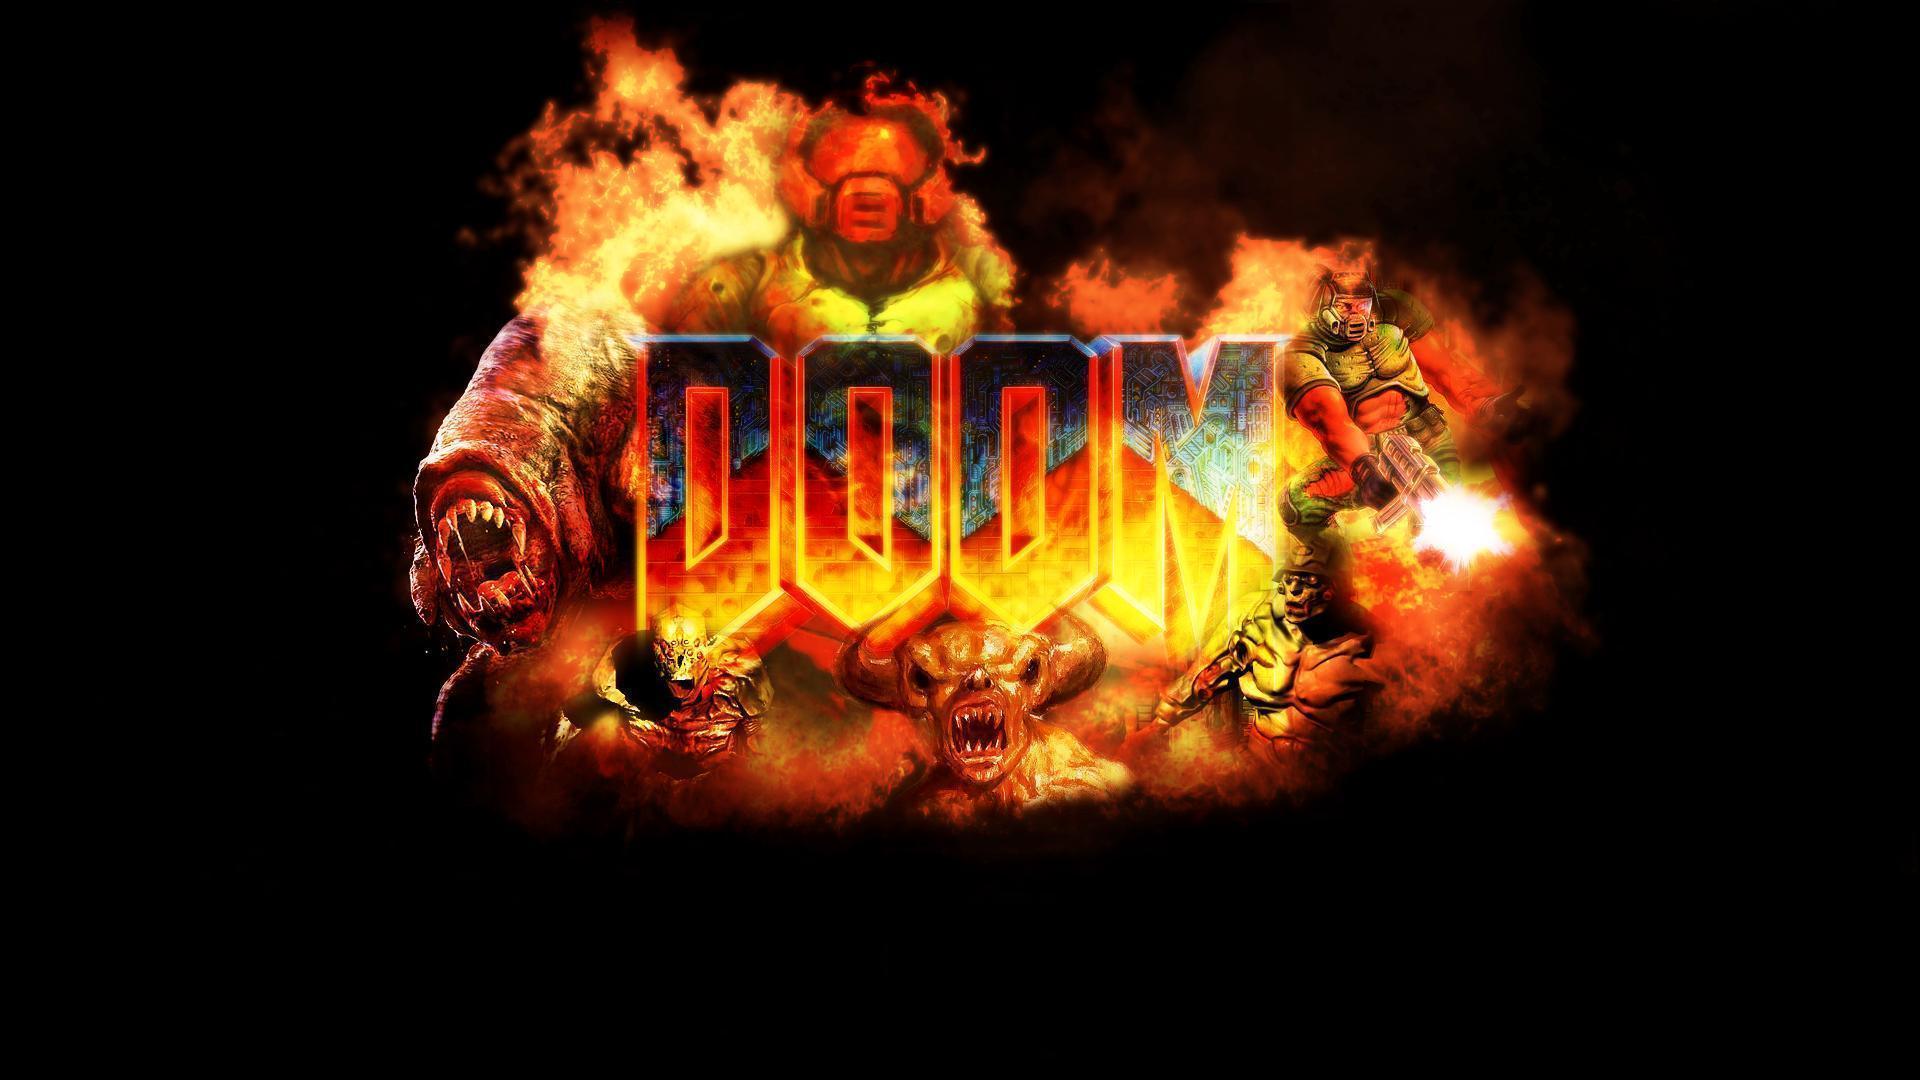 Doom Computer Wallpaper, Desktop Background 1920x1080 Id: 400704